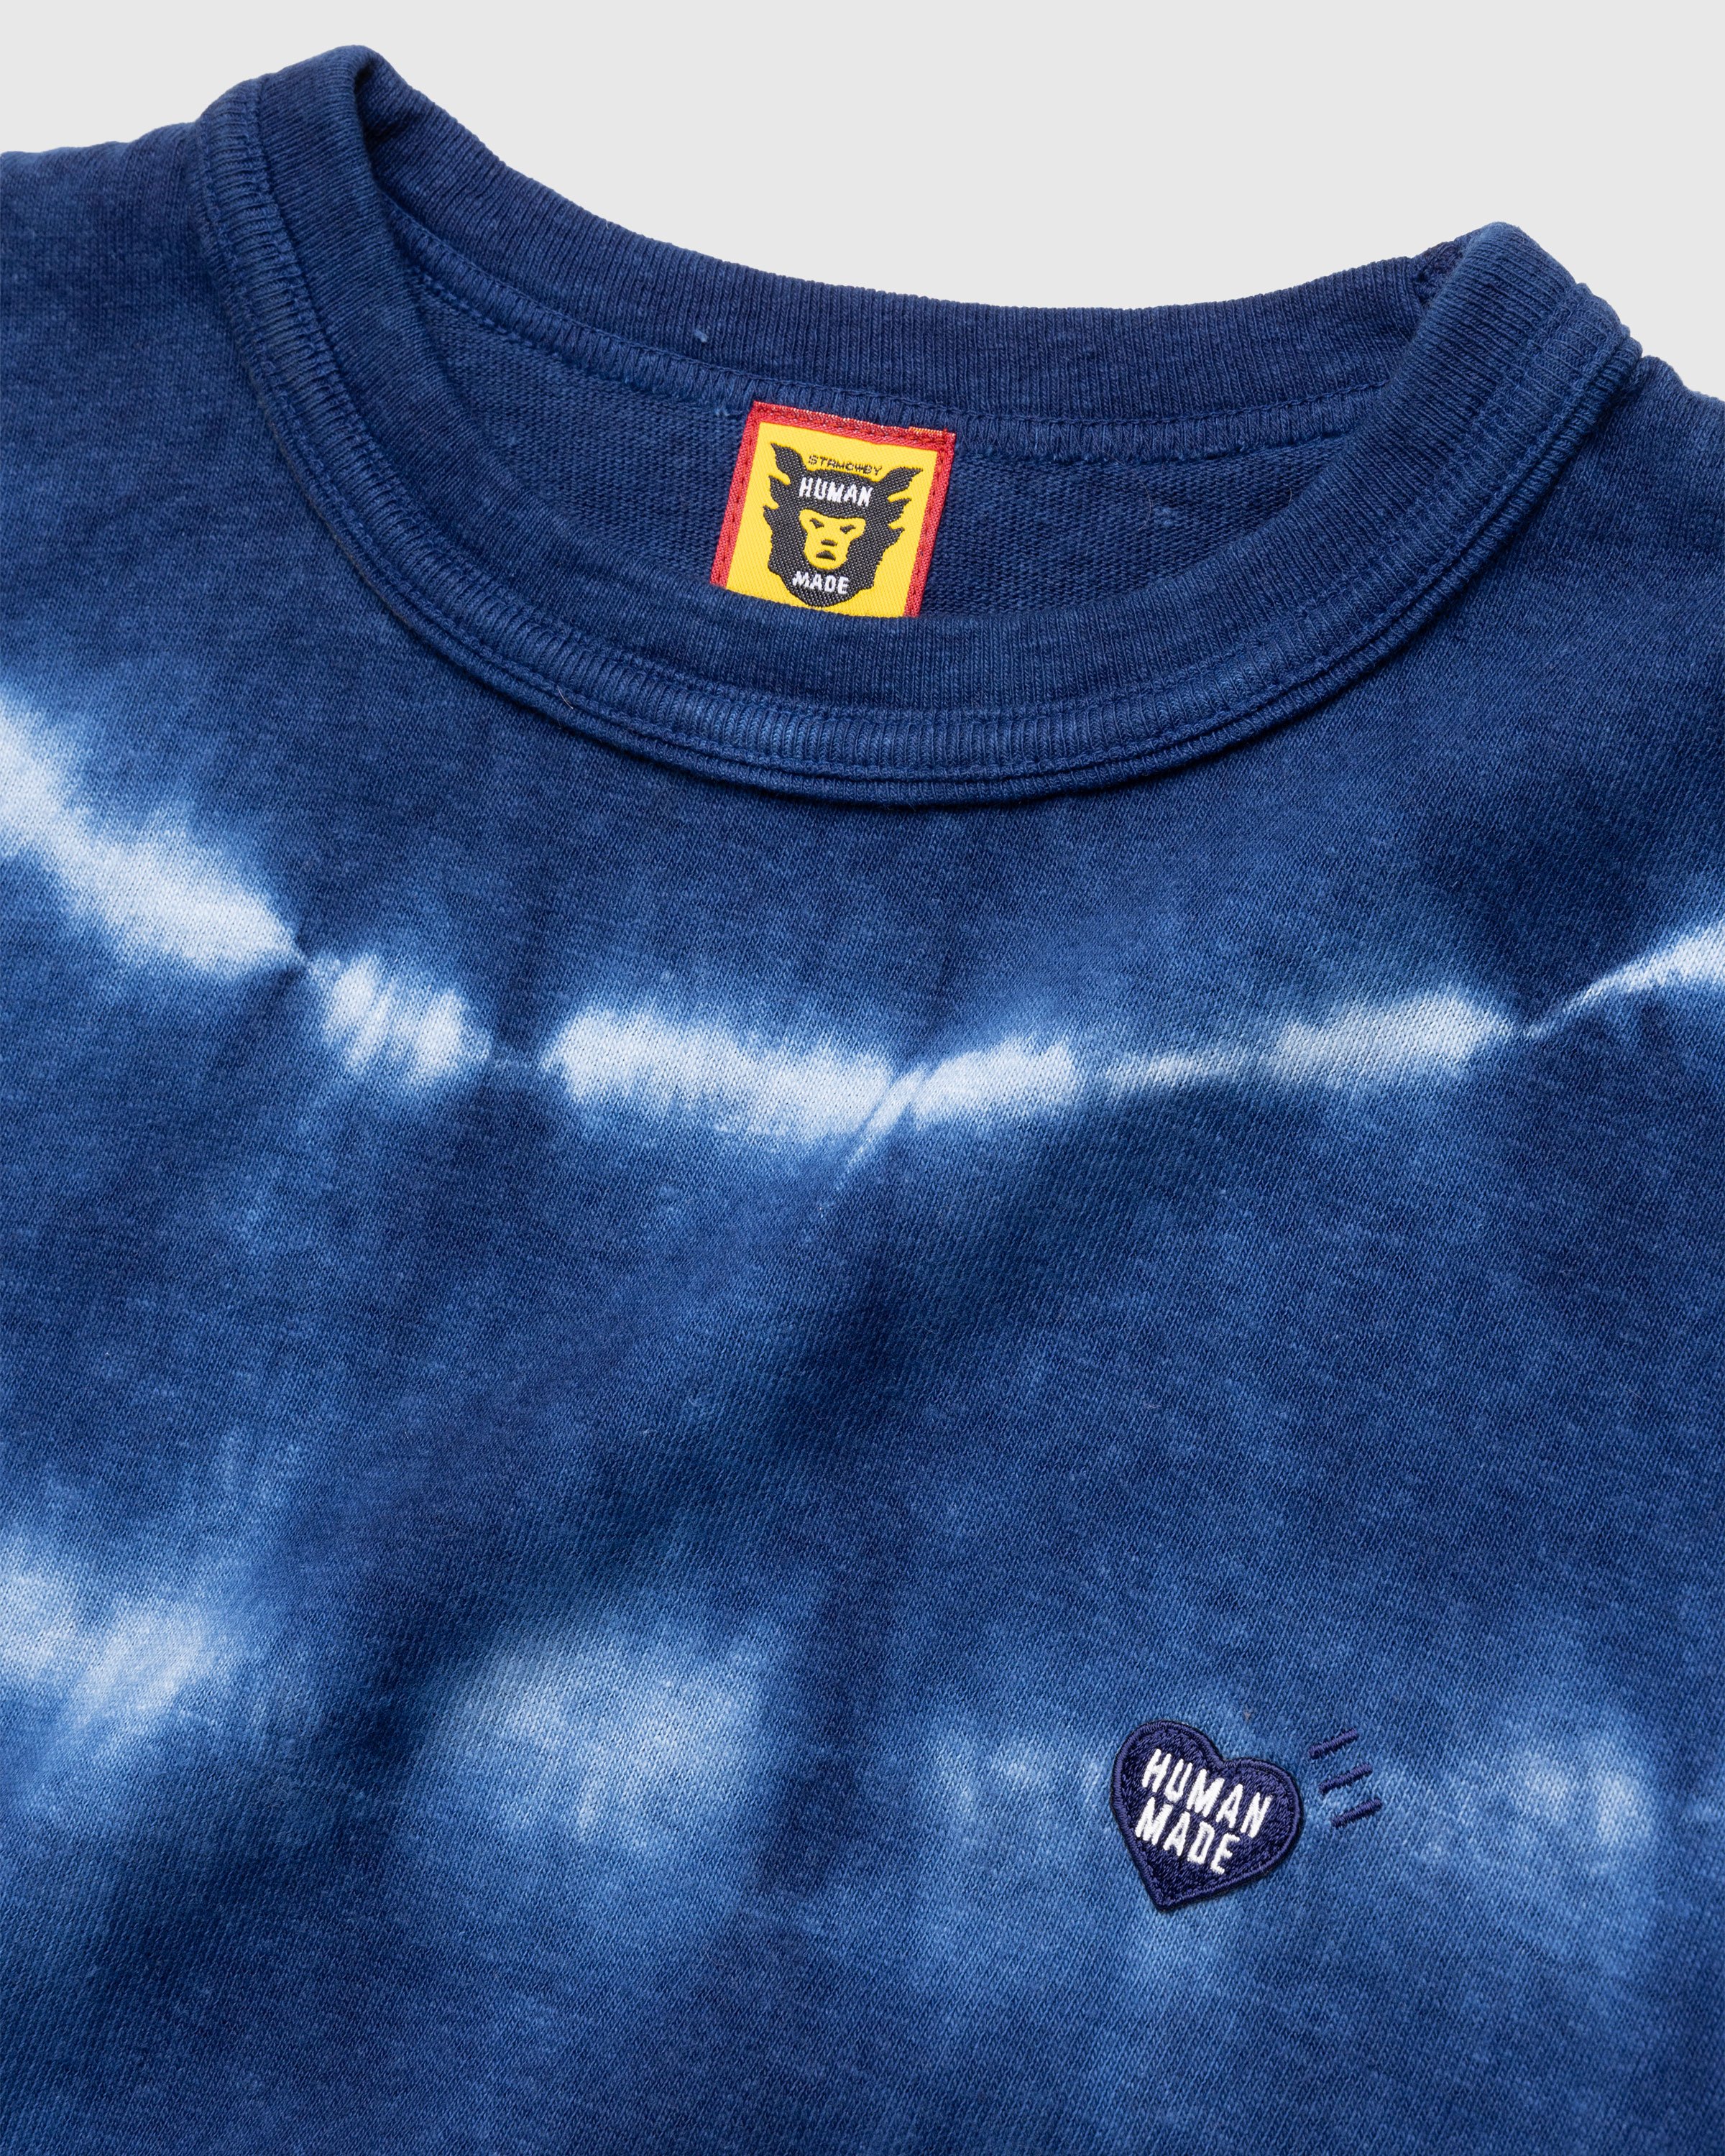 Human Made - Ningen-sei Indigo Dyed T-Shirt #1 Blue - Clothing - Blue - Image 5